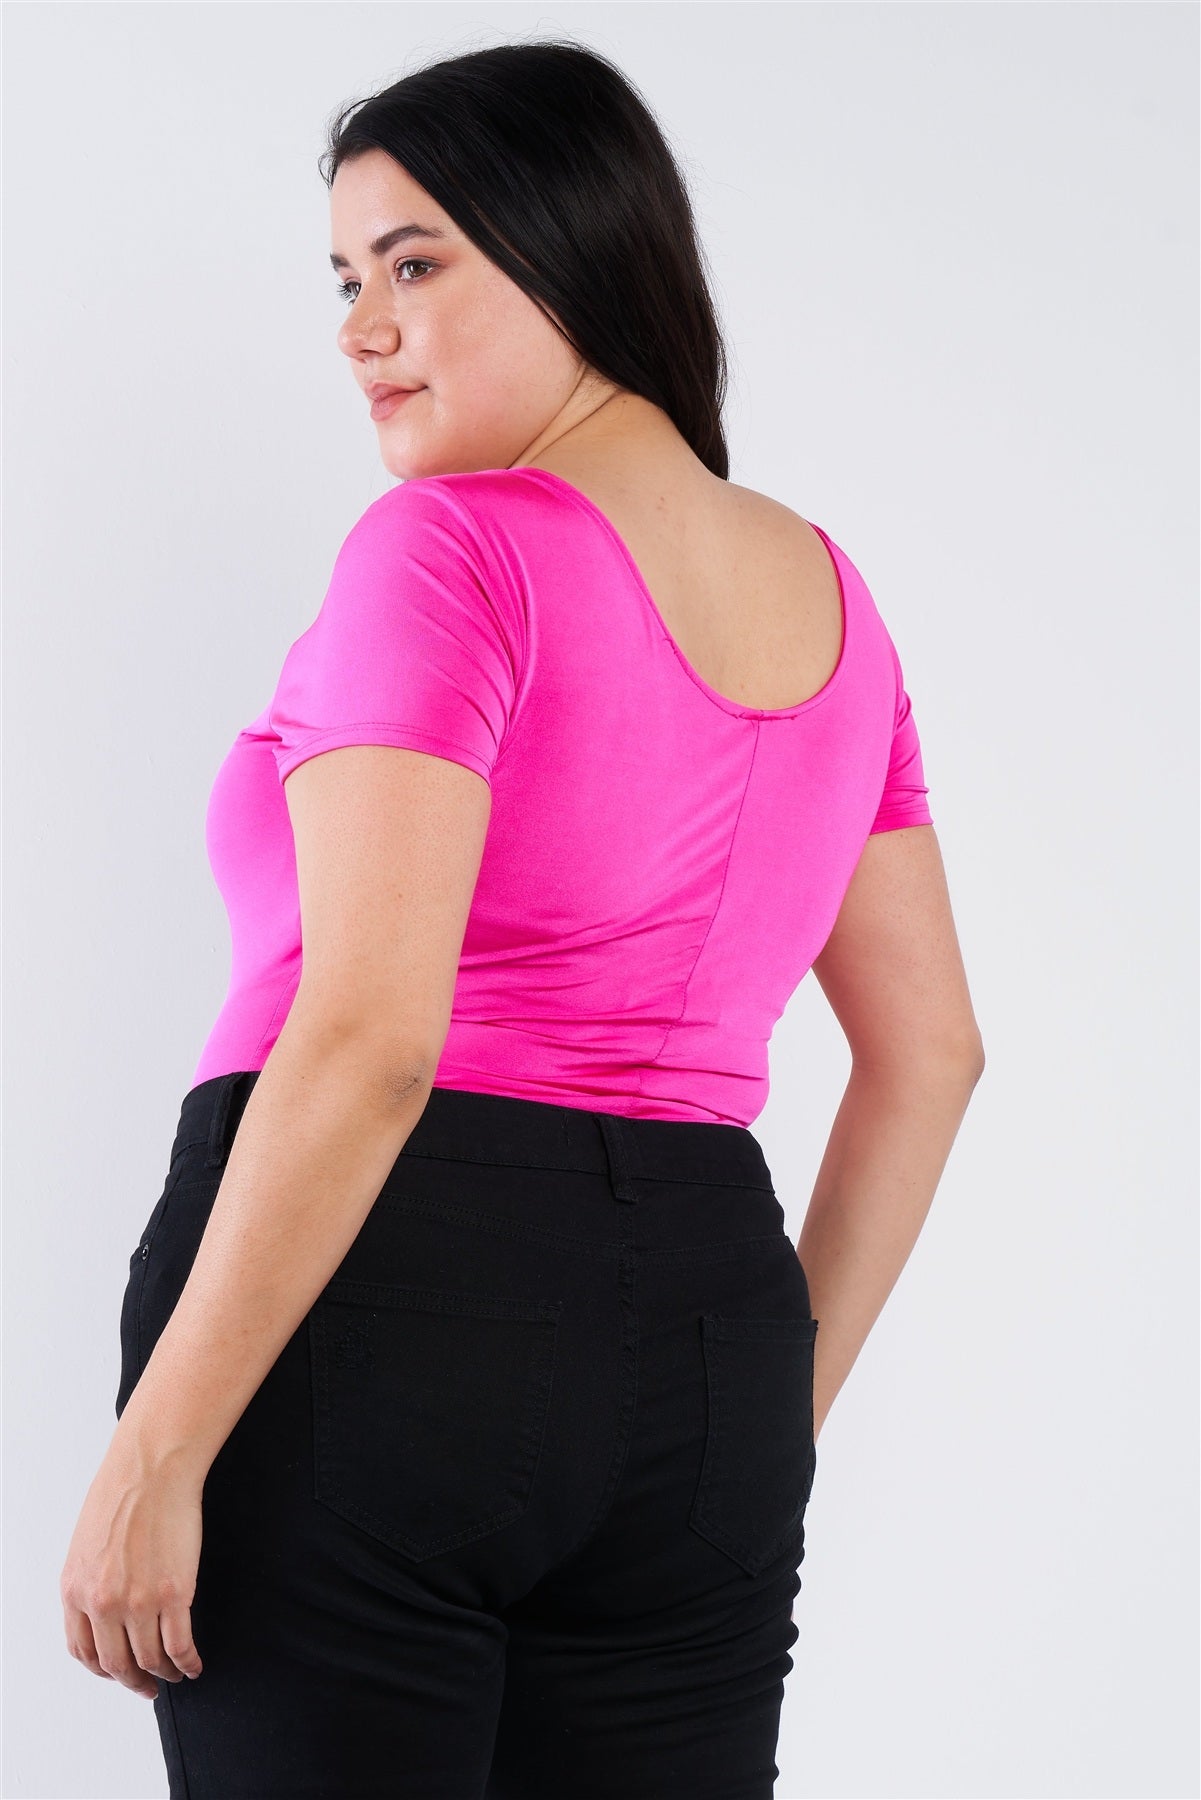 Voluptuous (+) Plus Size Bodysuit - 2 colors - women's shirt at TFC&H Co.